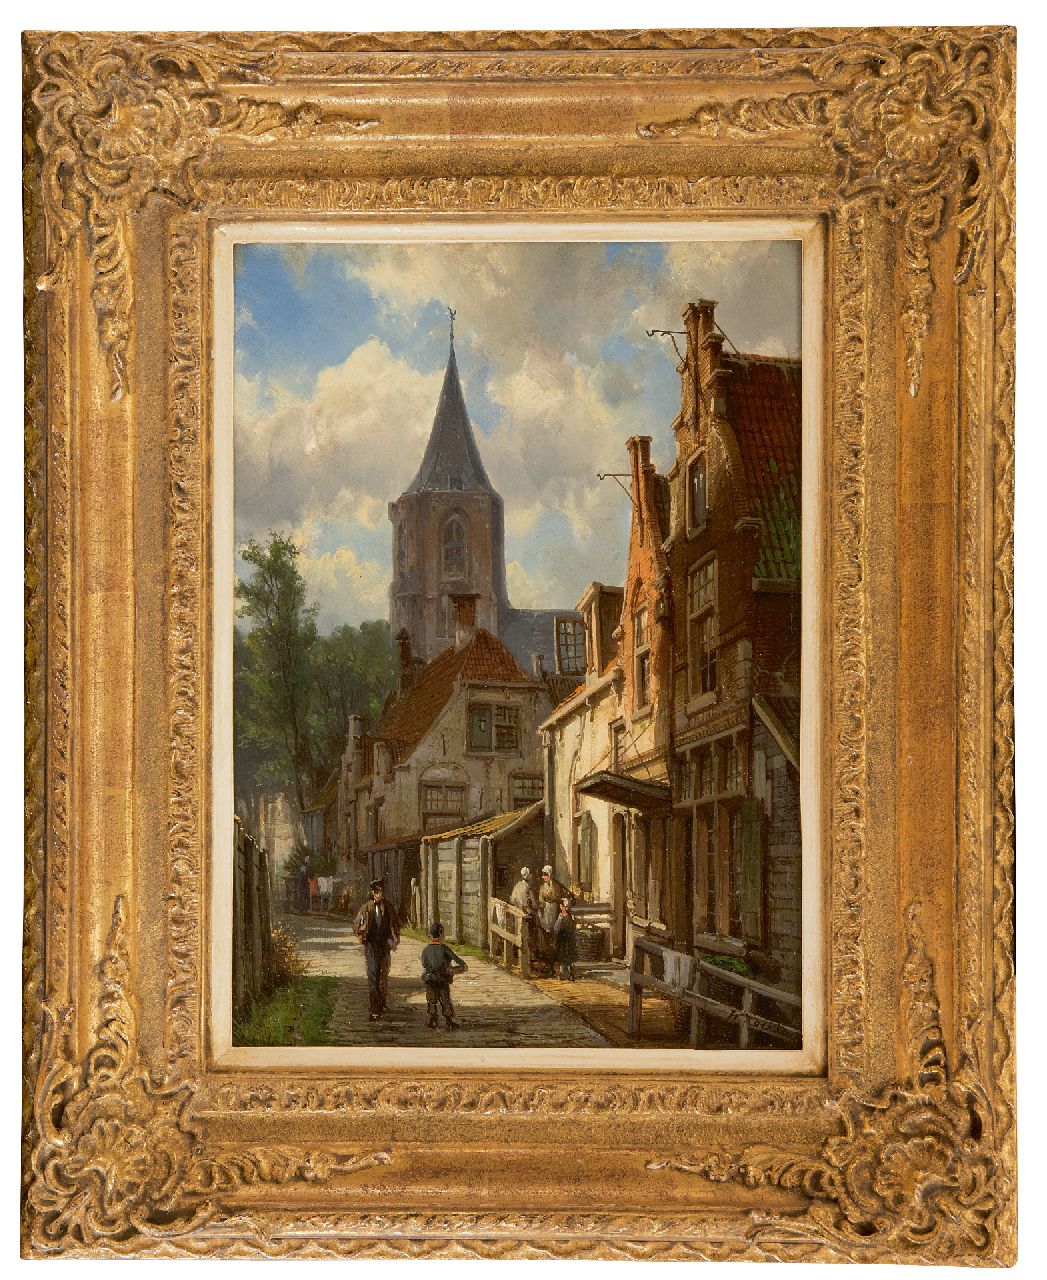 Koekkoek W.  | Willem Koekkoek, Zonnig straatje met figuren, olieverf op paneel 32,3 x 23,0 cm, gesigneerd rechtsonder